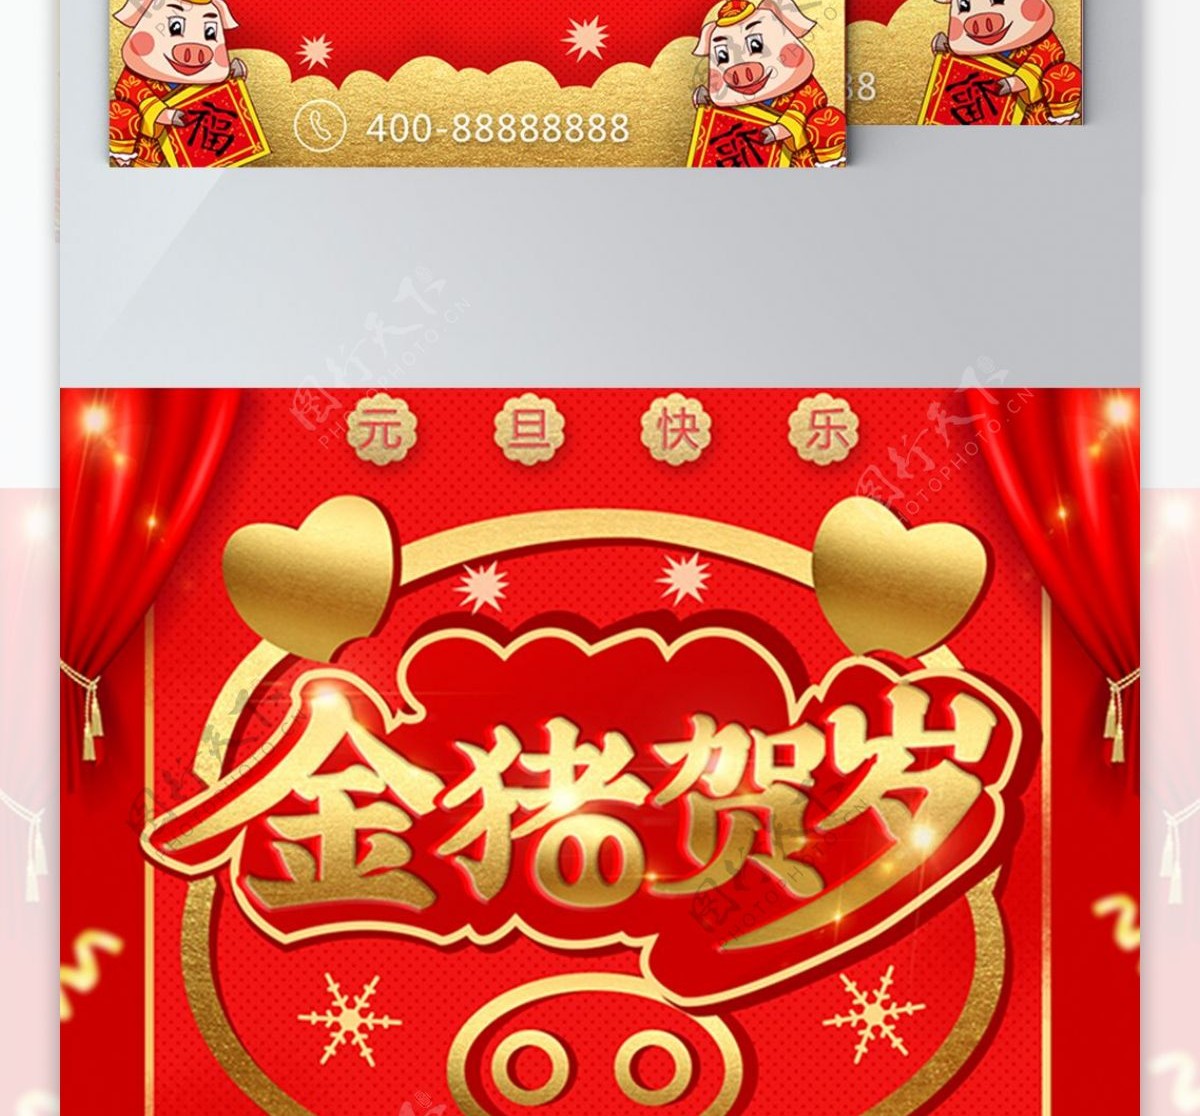 中国风元旦新年促销DM单页正面和反面